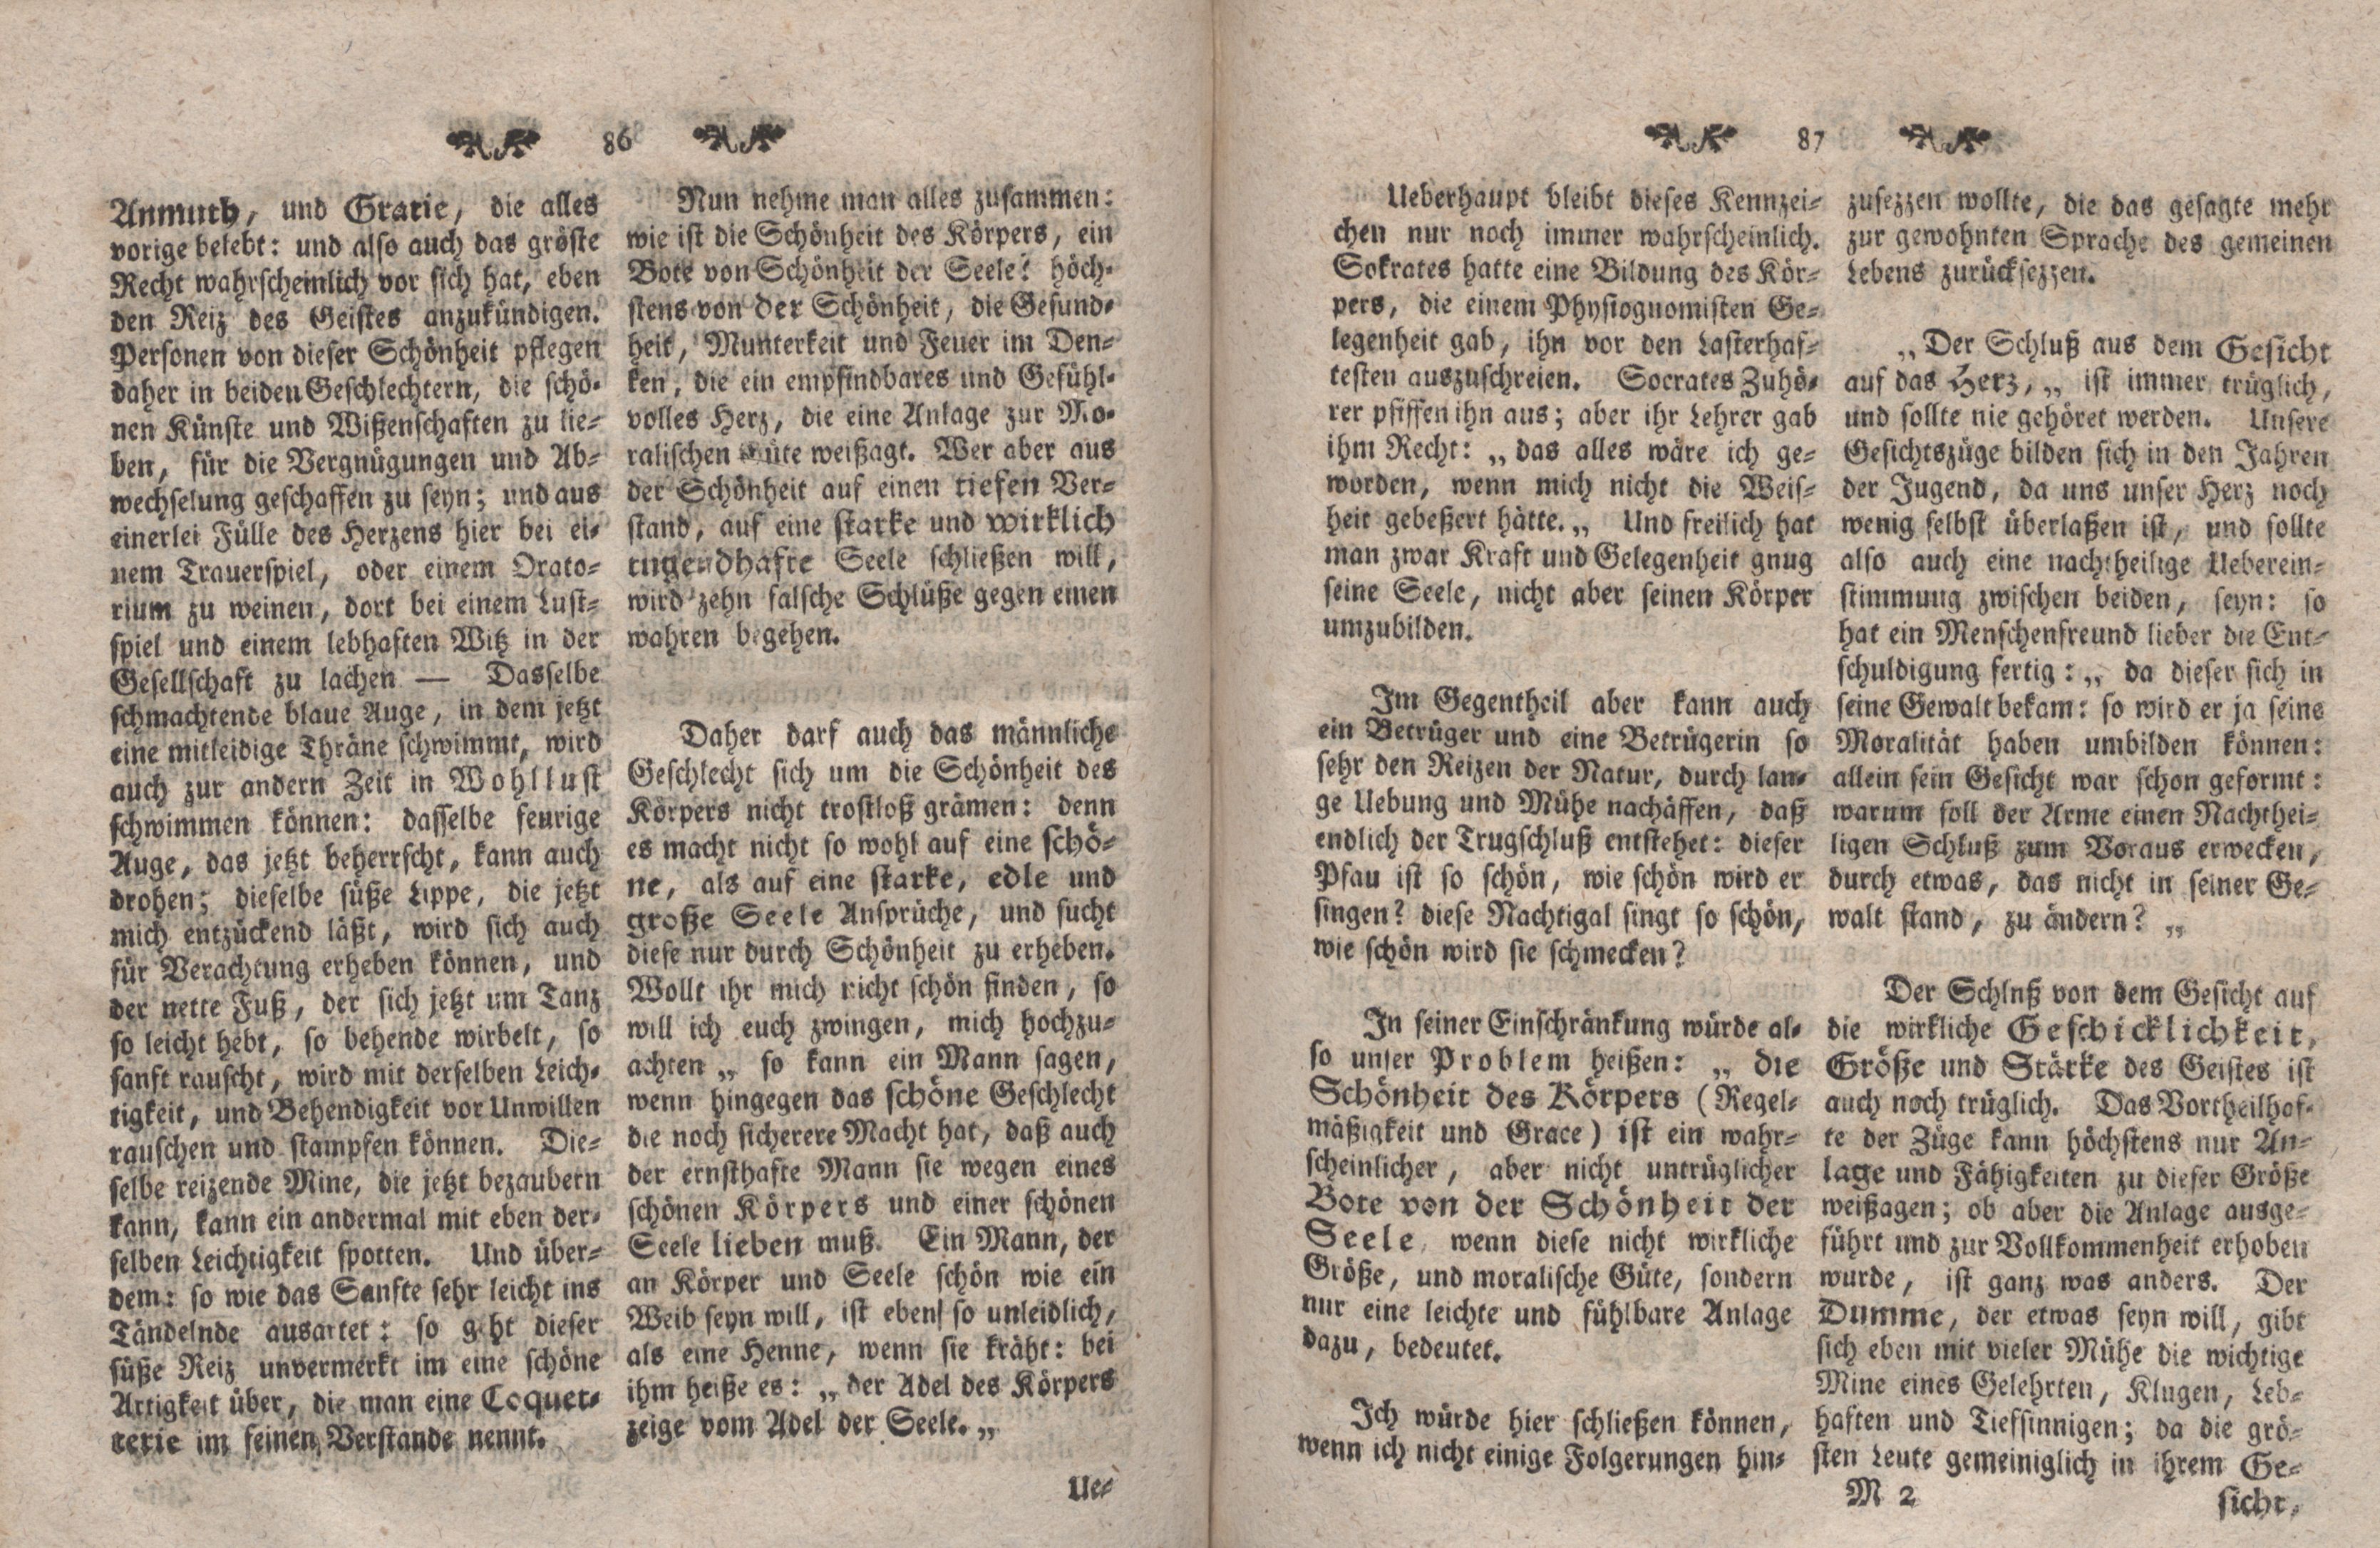 Gelehrte Beyträge zu den Rigischen Anzeigen 1766 (1766) | 44. (86-87) Main body of text